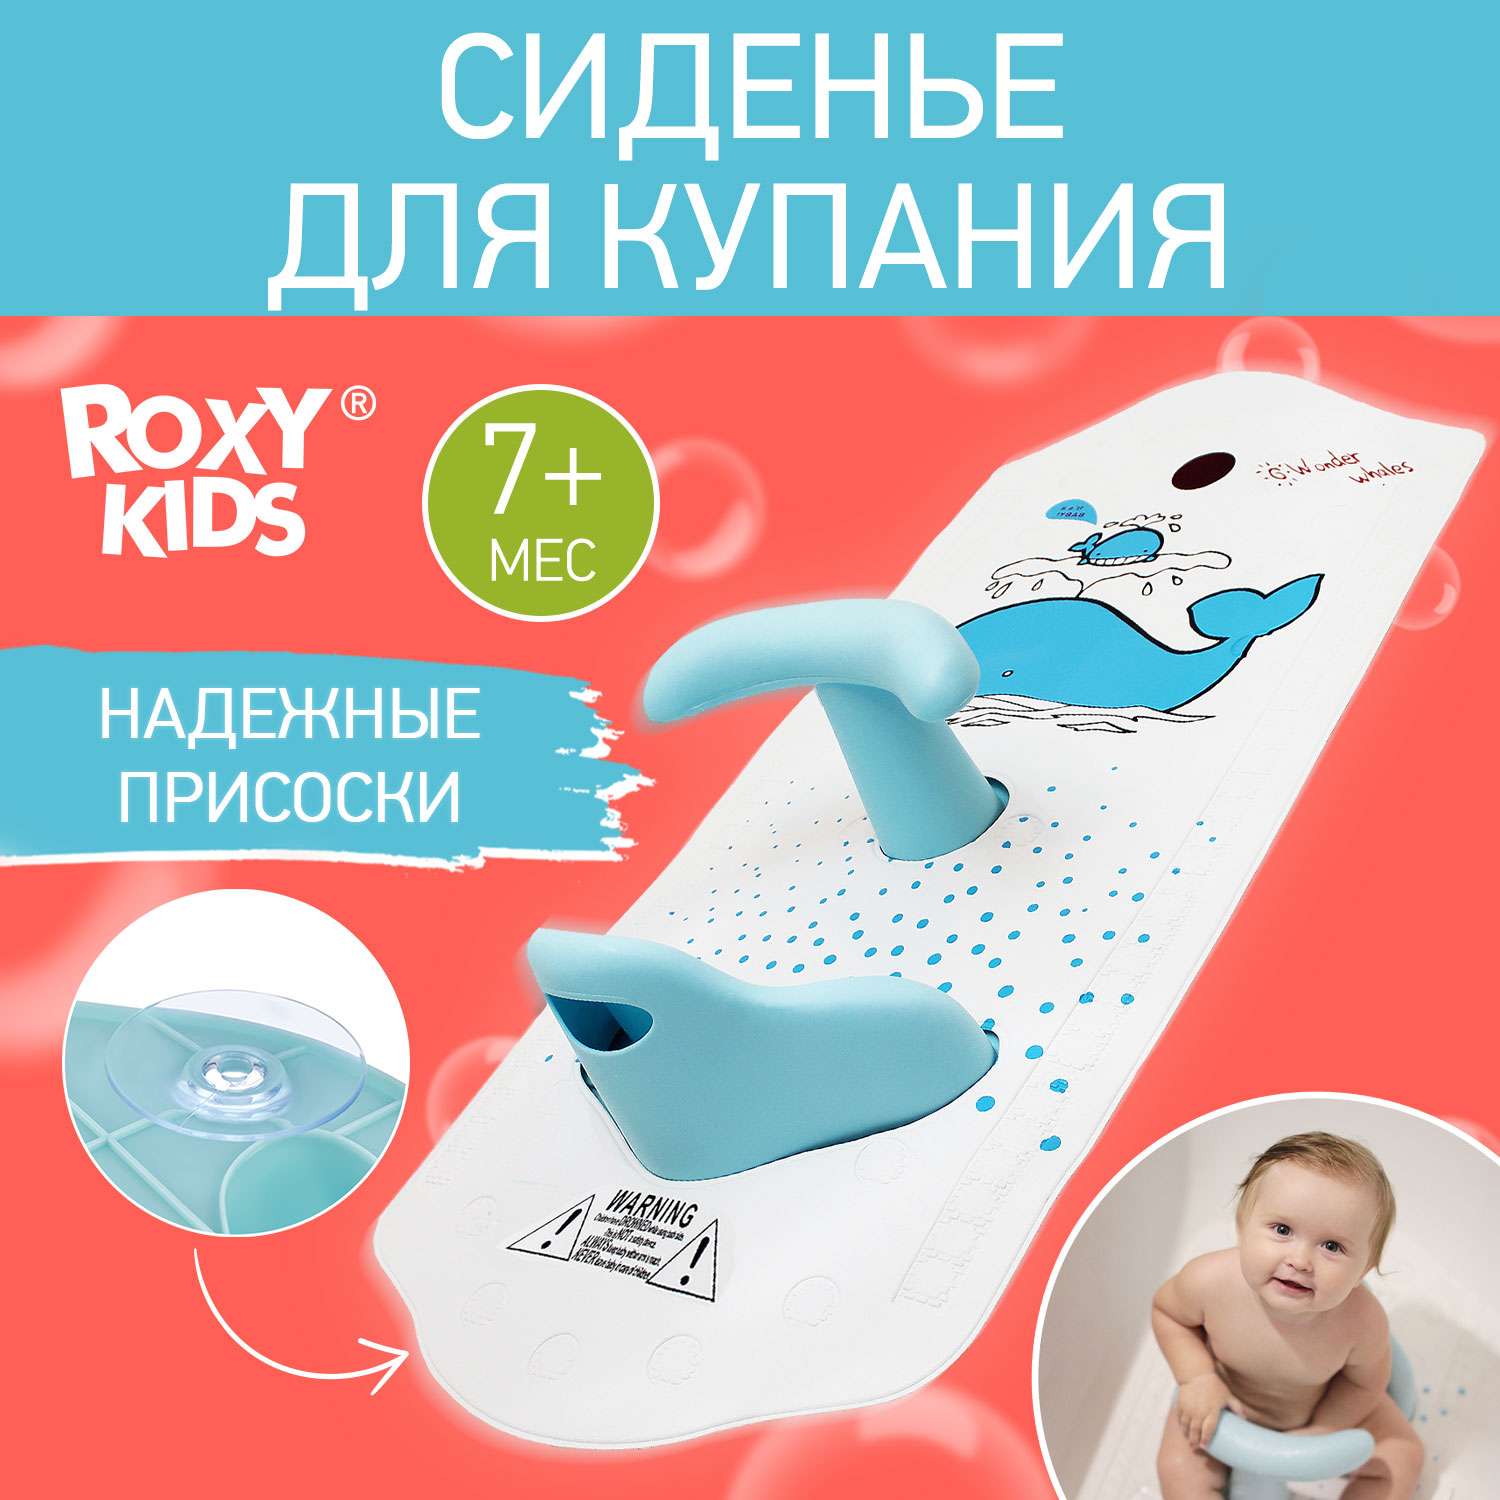 Стульчик для купания в ванной ROXY-KIDS съемный на противоскользящем коврике модель Китенок - фото 1